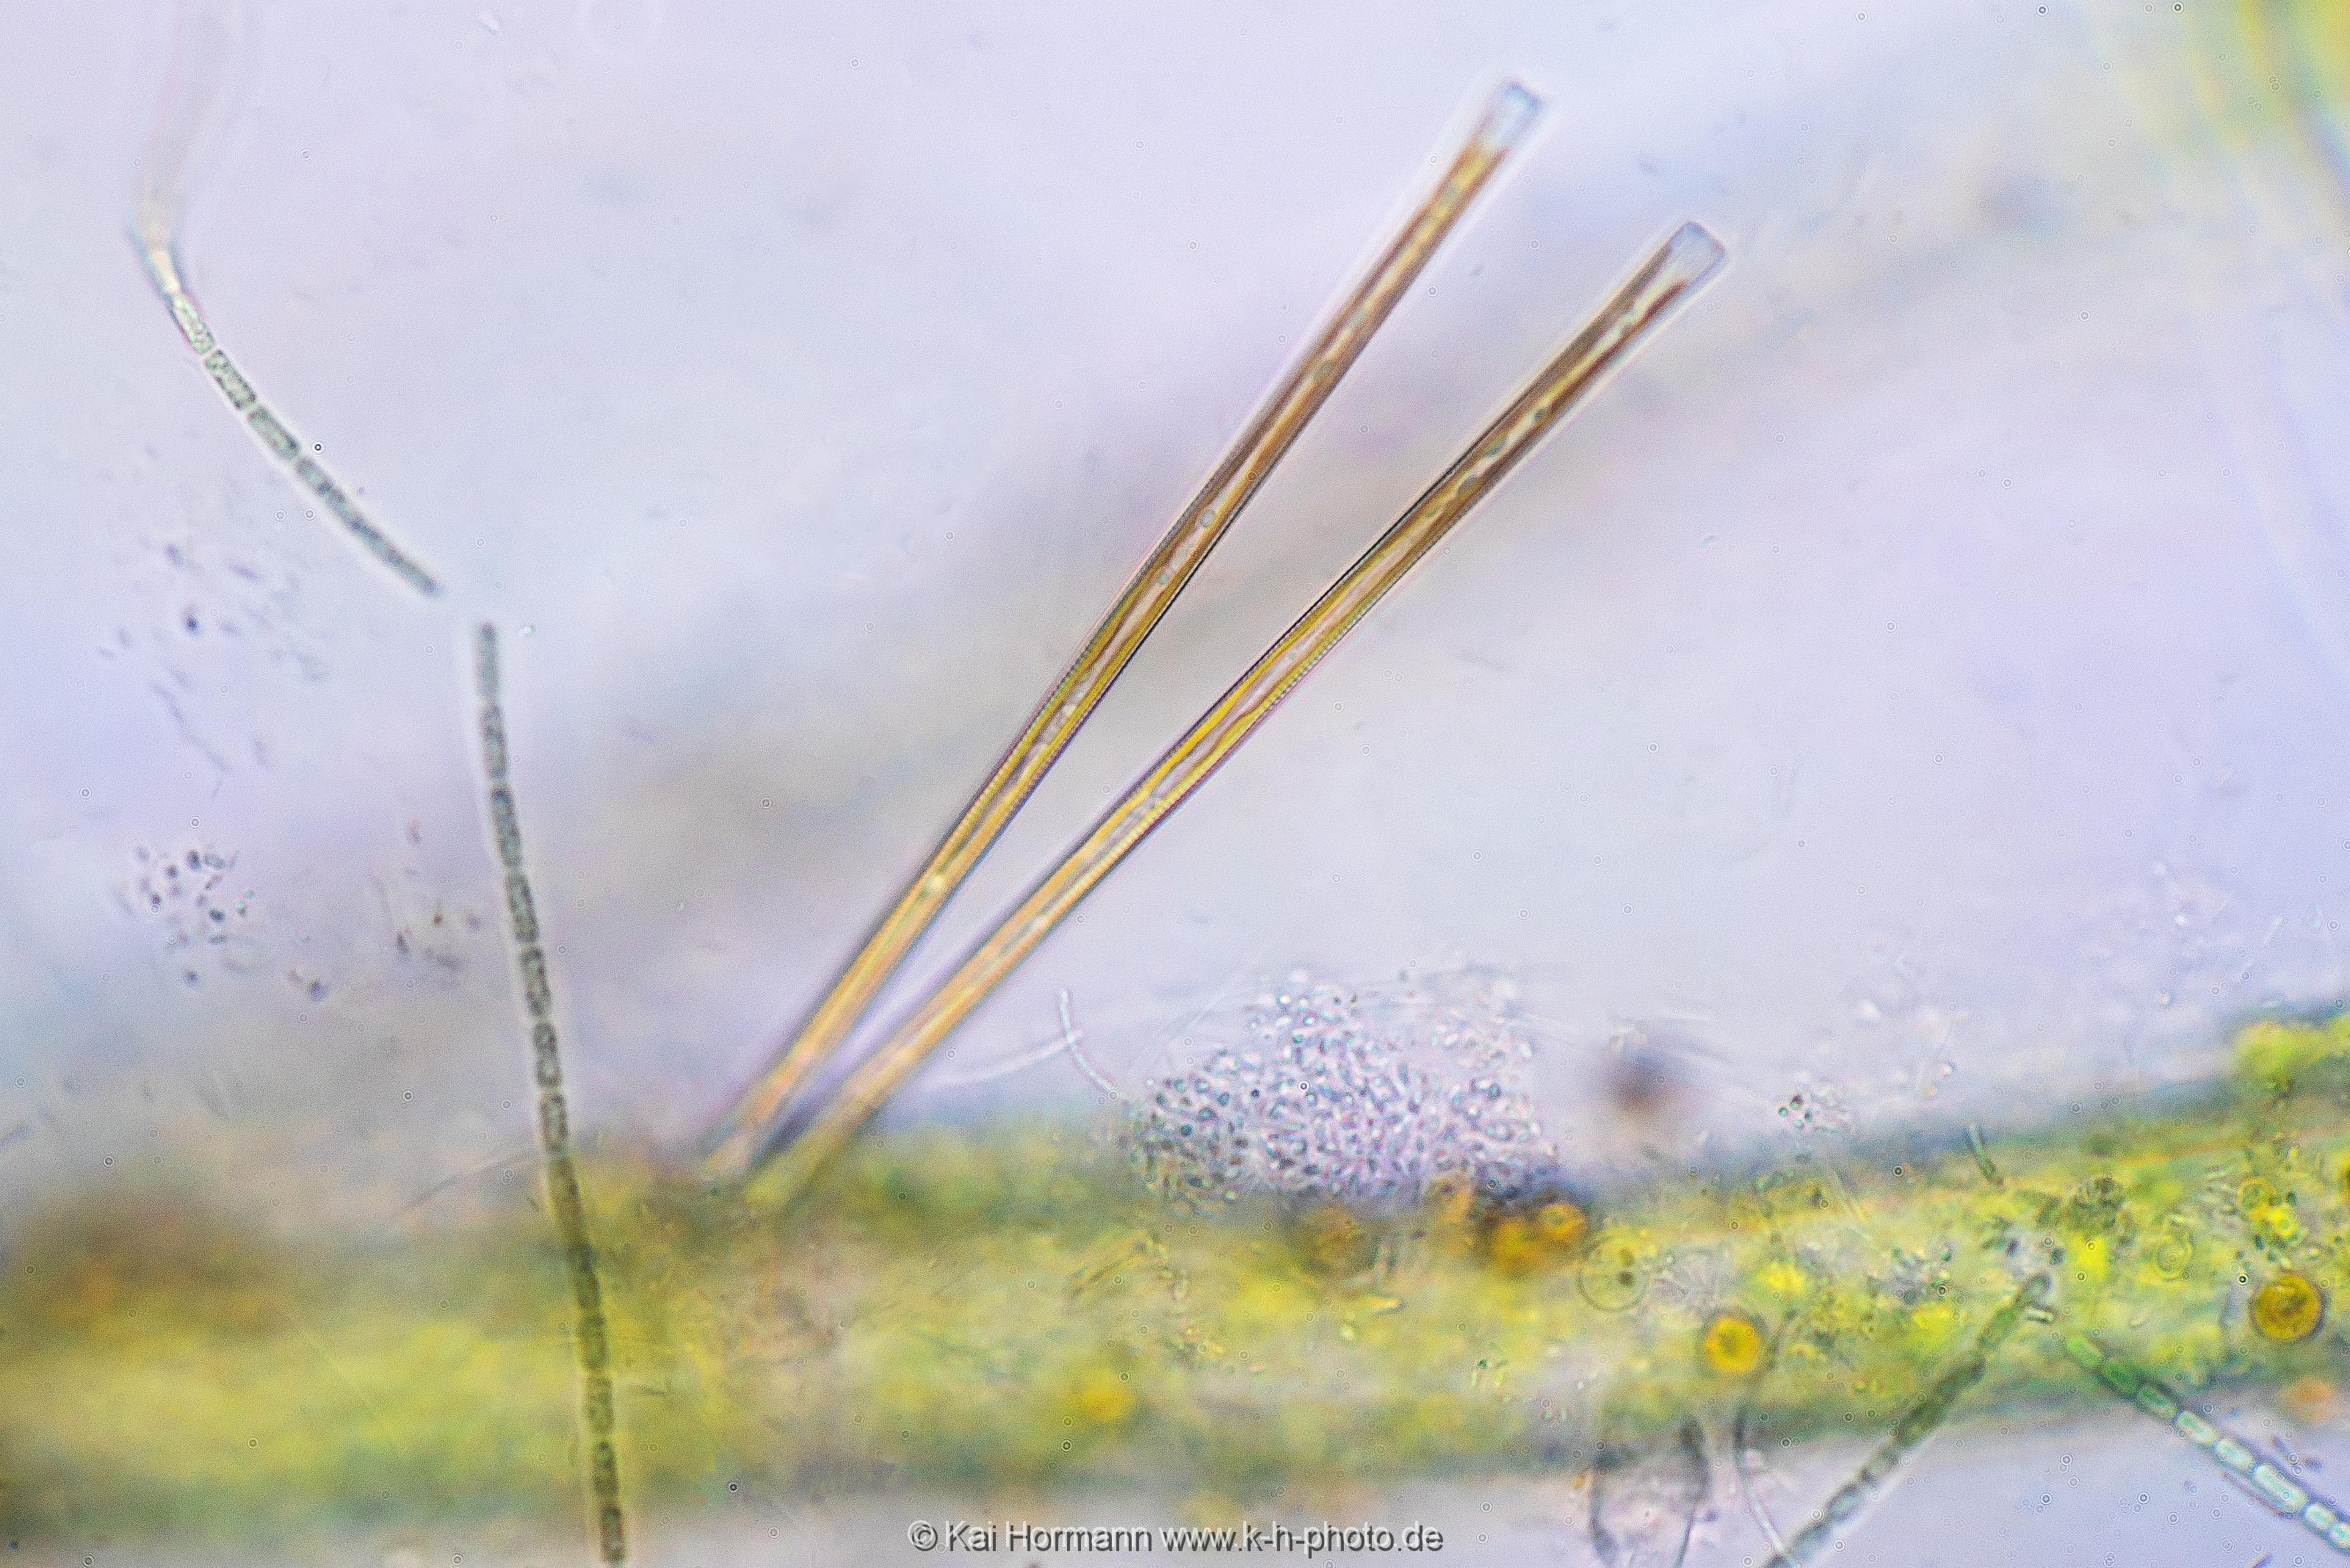 Nadel-Kieselalge Mikrofotografie: Mikroskopische Aufnahmen von Einzellern, Algen und Kleinstlebewesen.